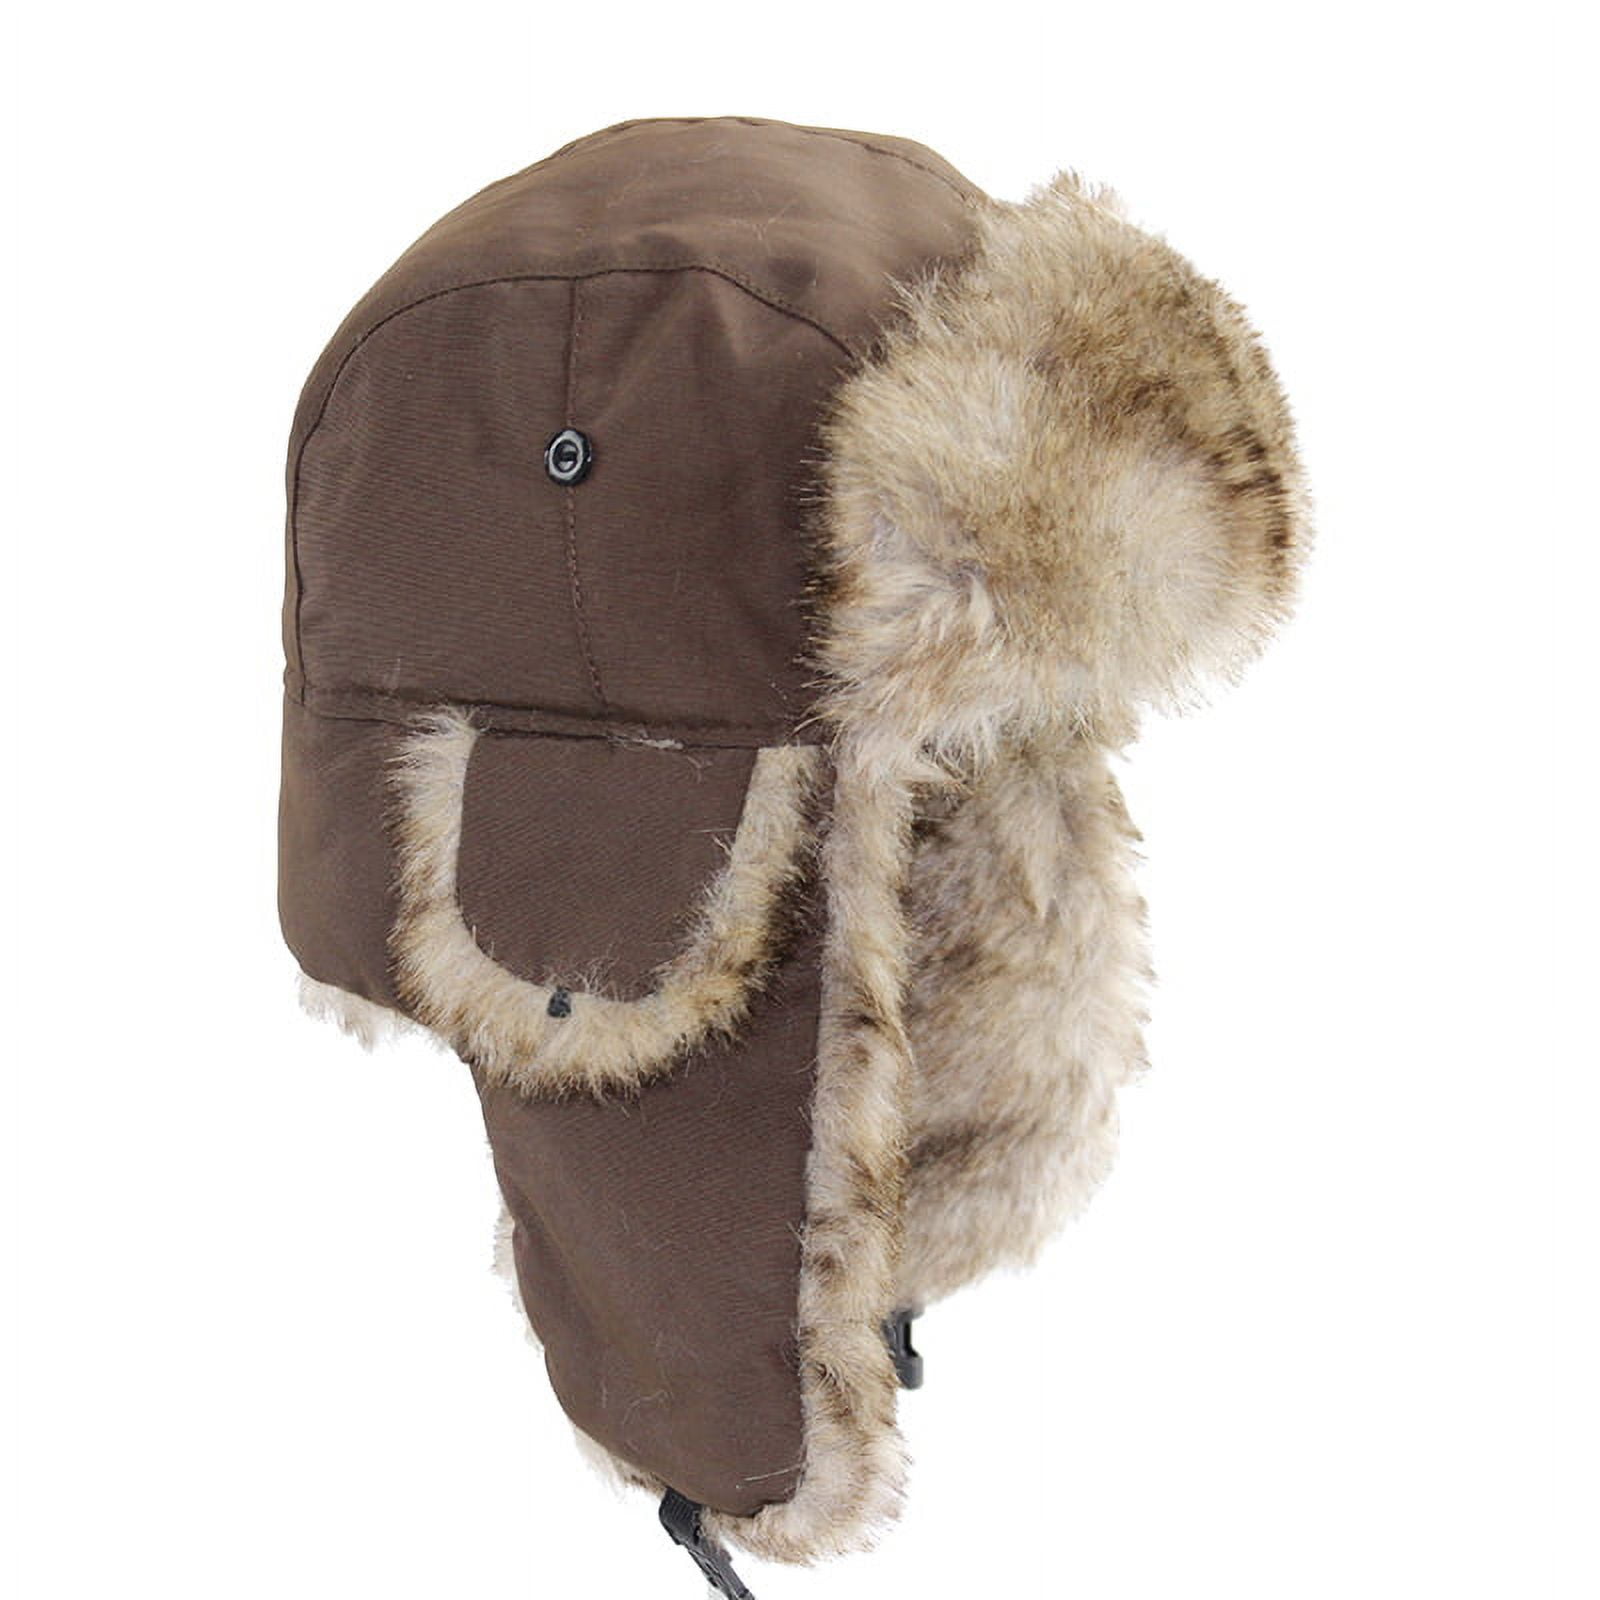 Result Trapper Hat Thinsulate 3M Russian Sherpa Winter Fleece Ear Flap Warm  Cap